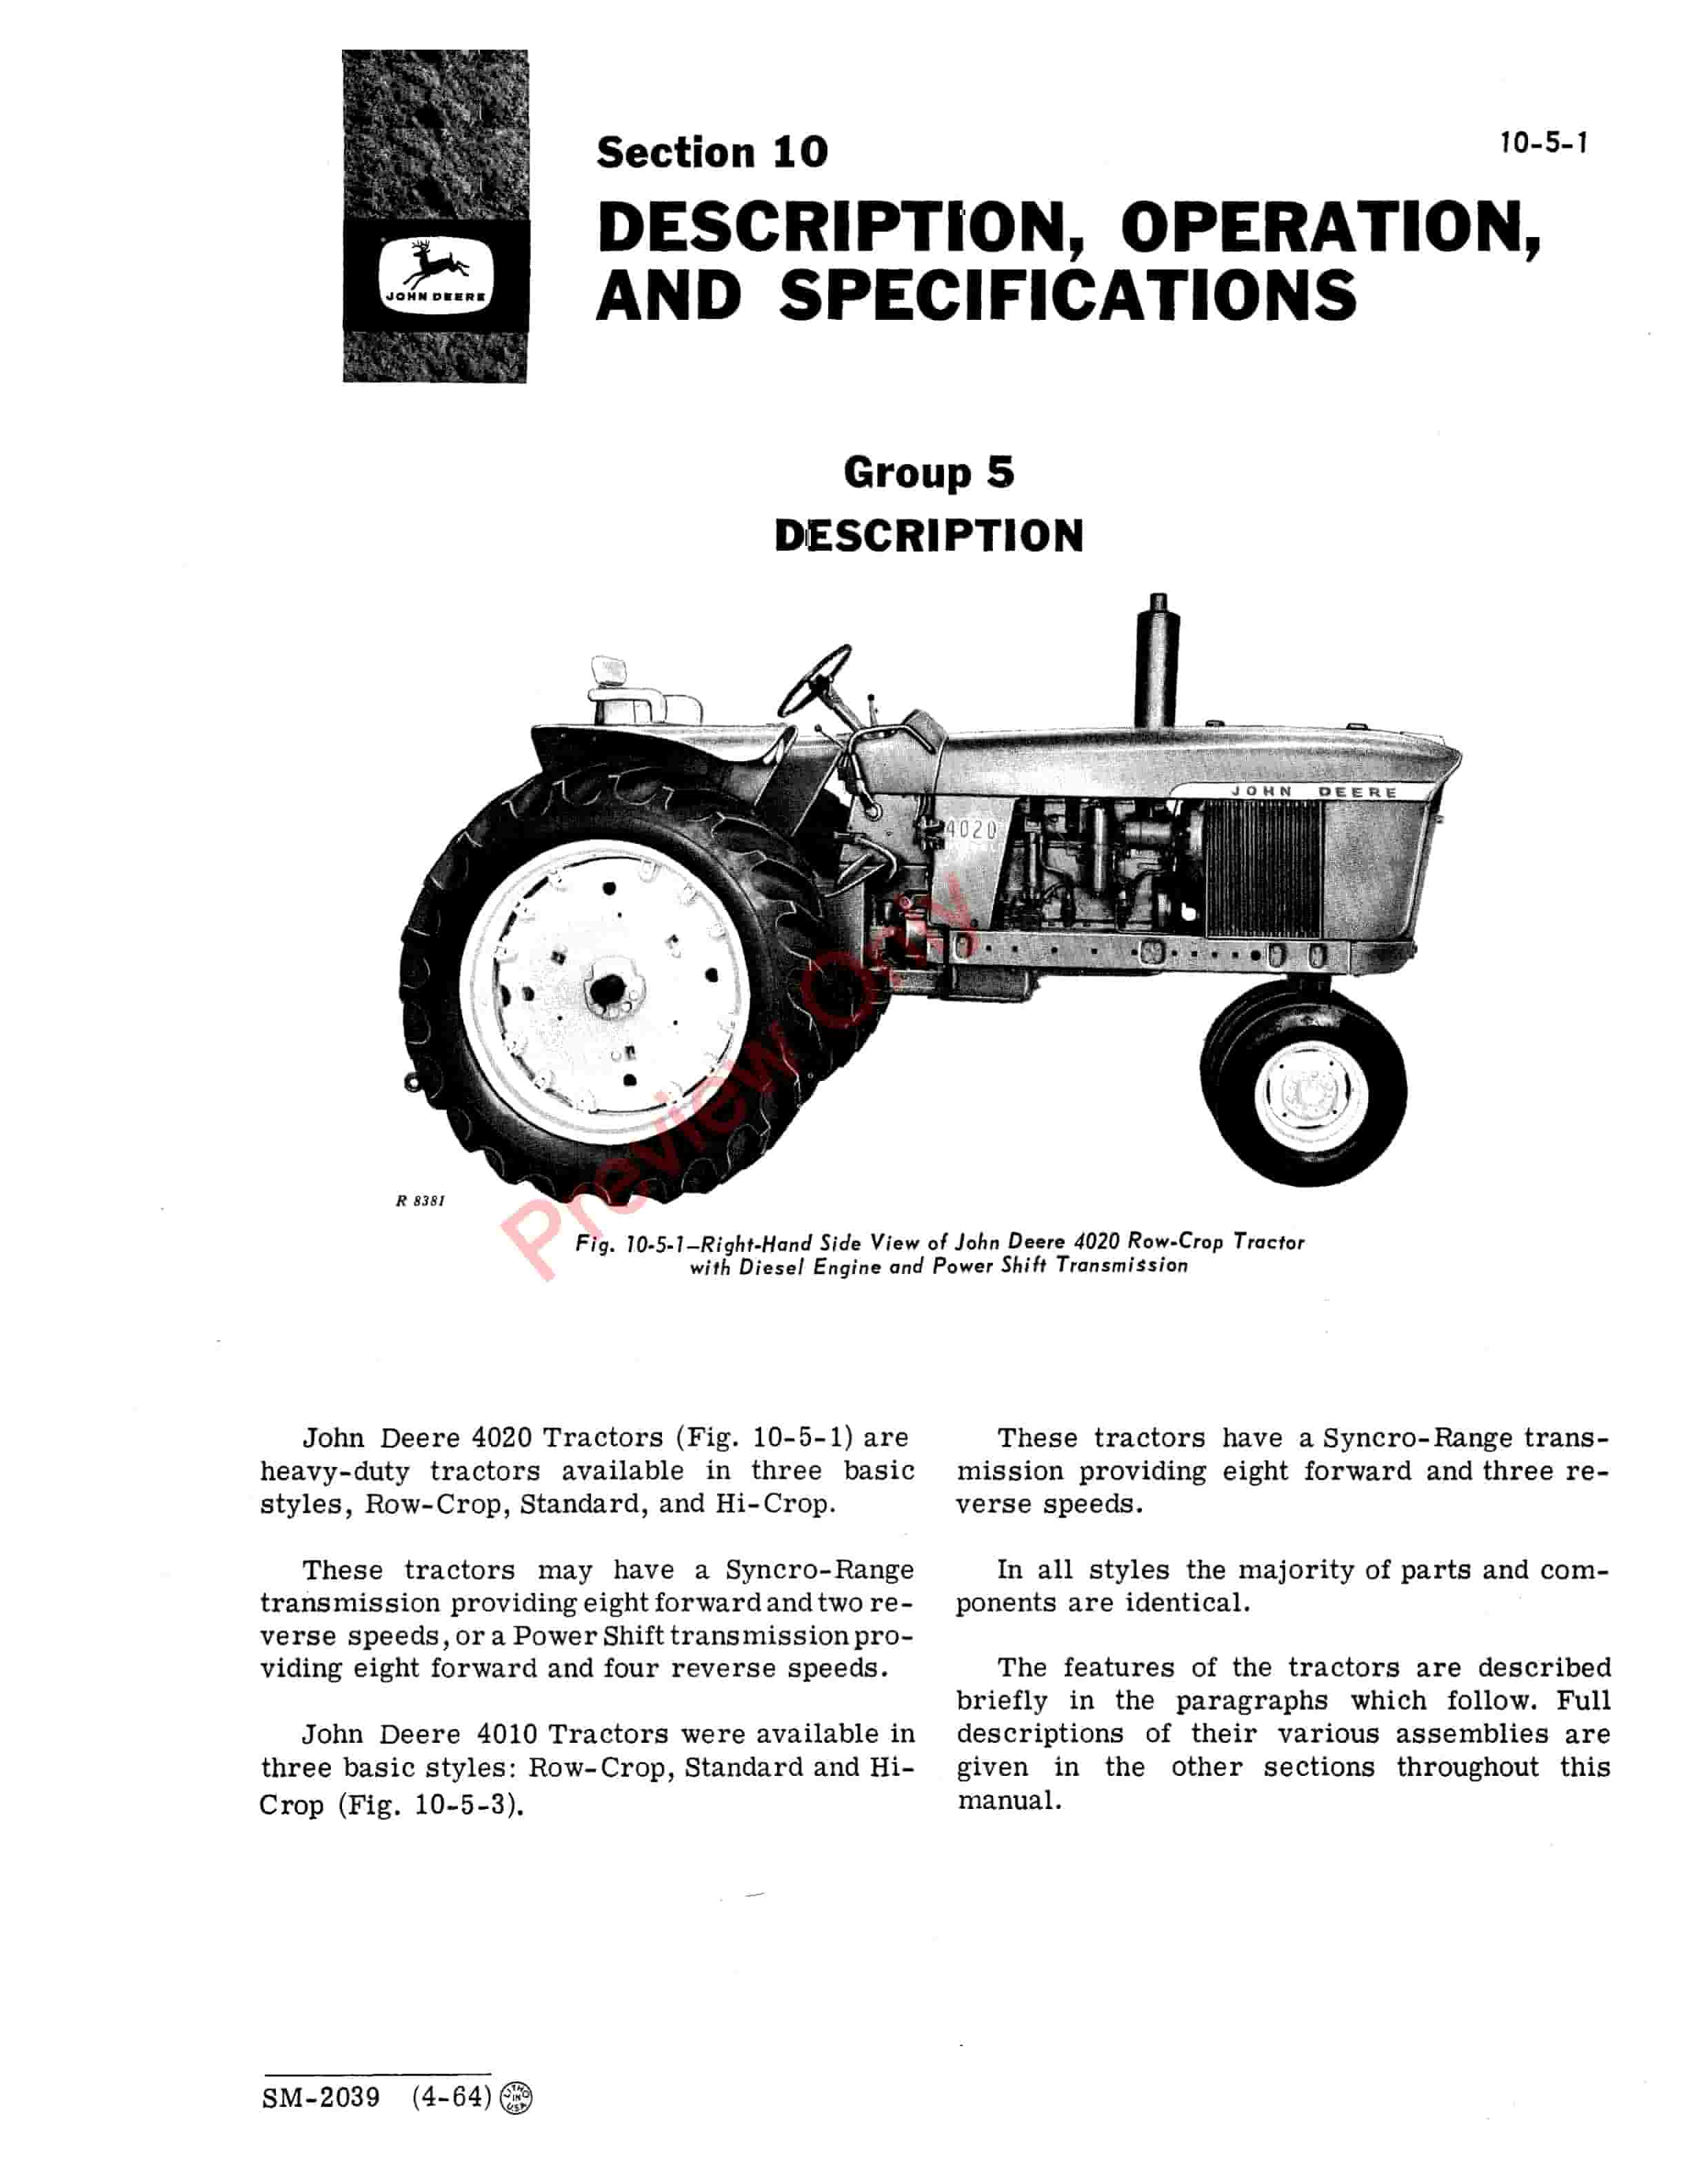 John Deere 4000 Series Tractors Service Manual SM2039 01APR67 5